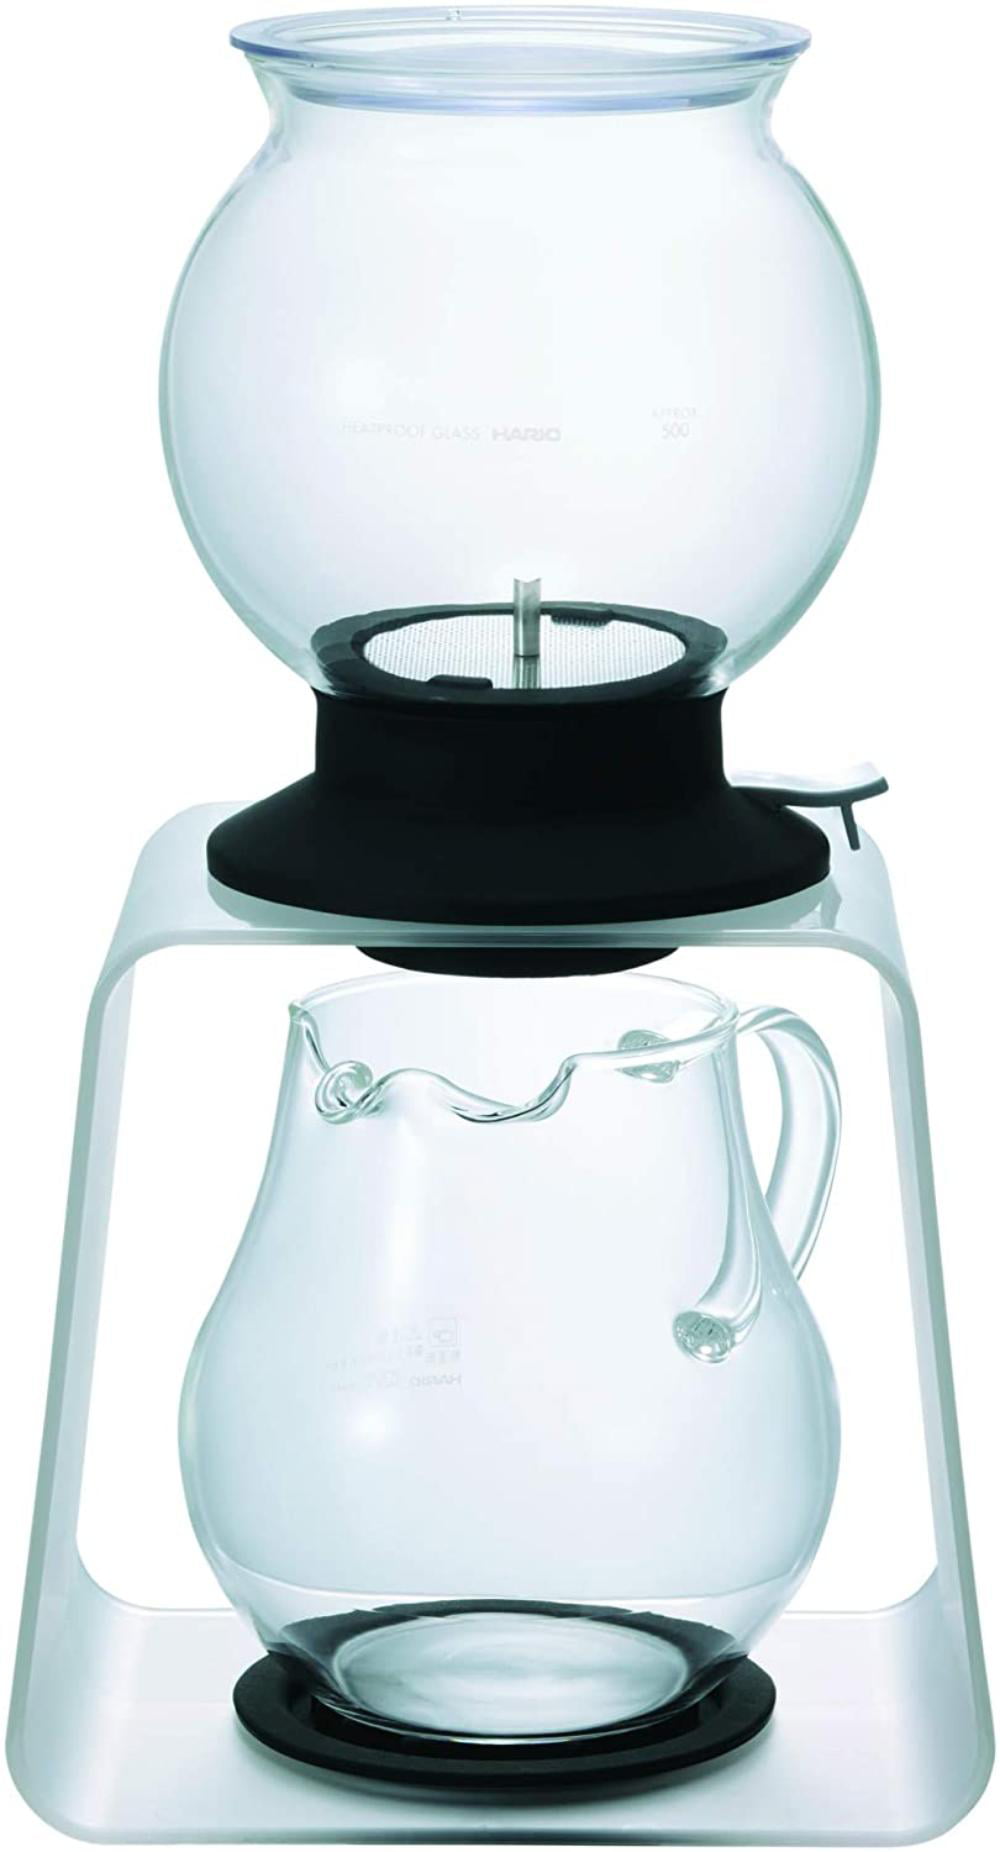 Charles Viancin Lily Pad Tea Infuser Set Single Serve Tea Maker 